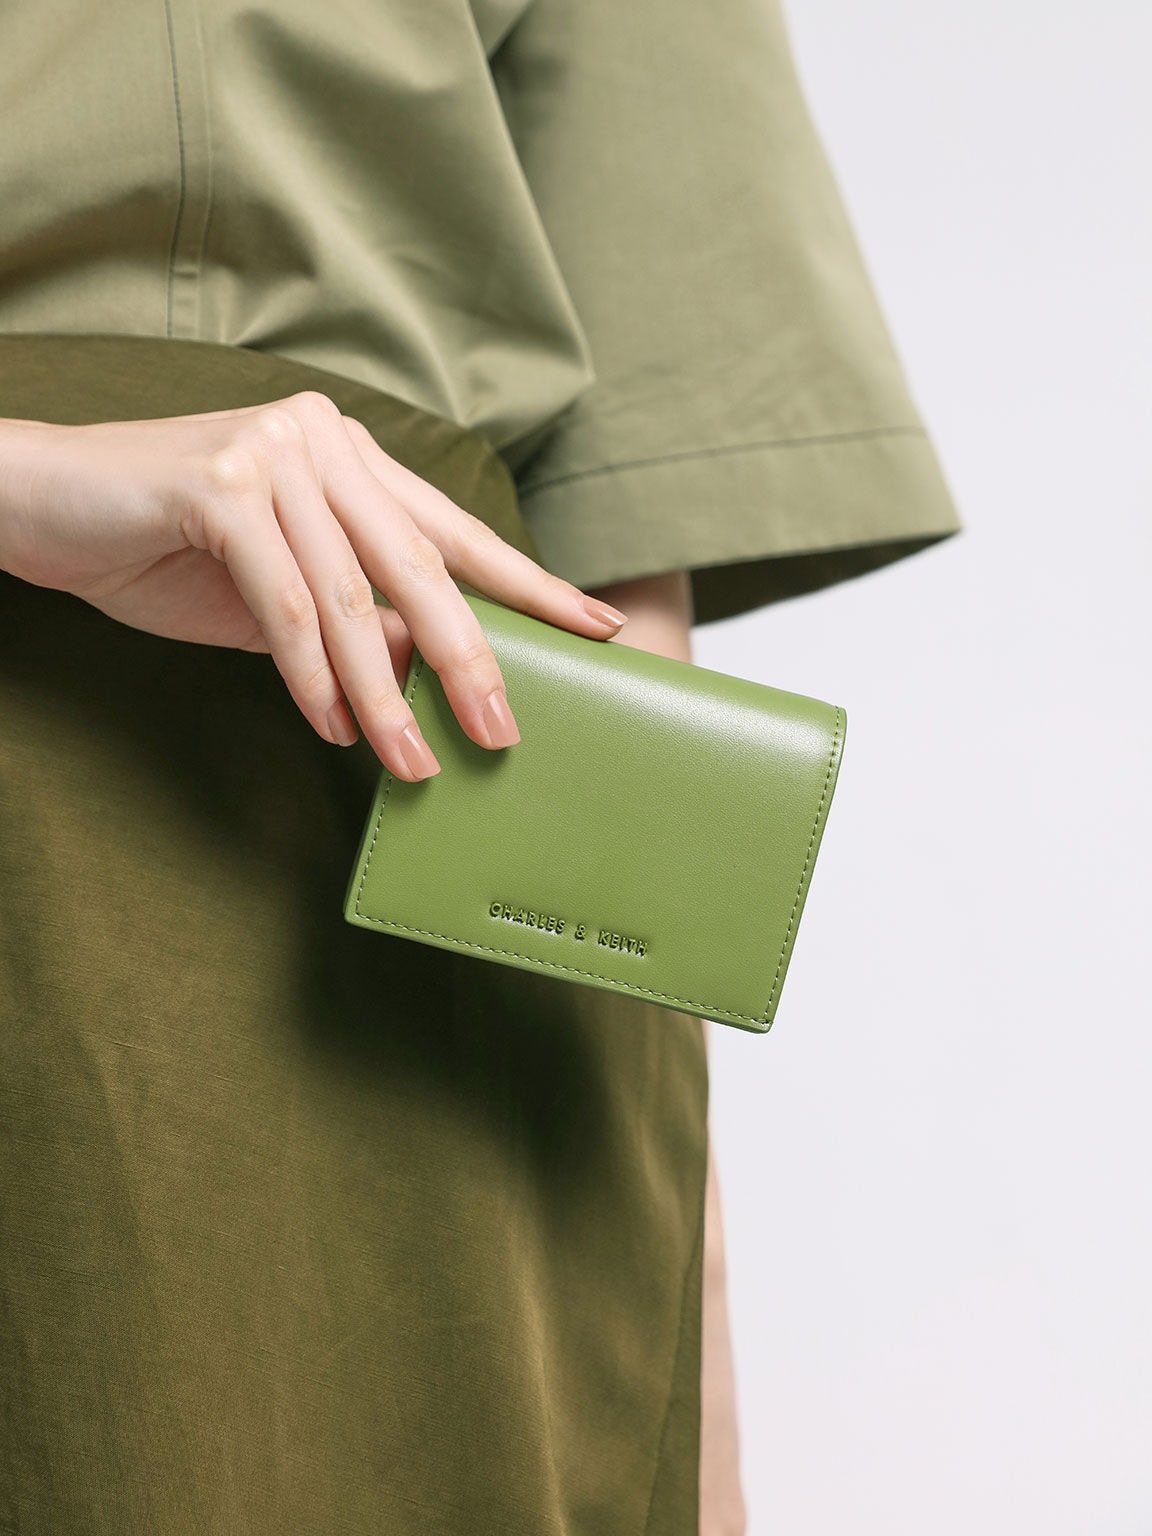 Snap Button Mini Short Wallet, Green, hi-res